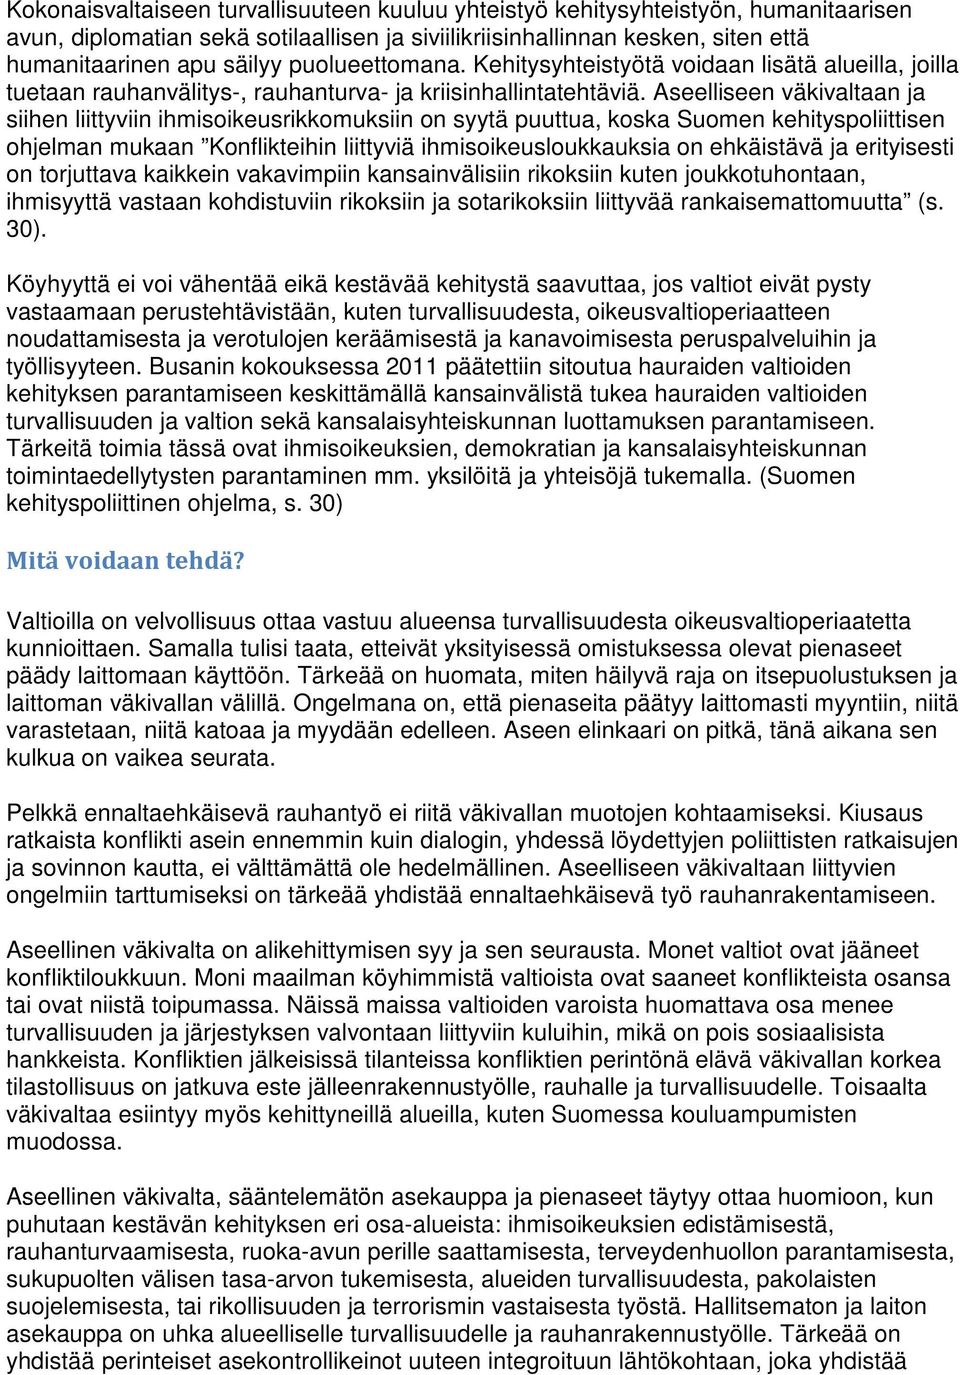 Aseelliseen väkivaltaan ja siihen liittyviin ihmisoikeusrikkomuksiin on syytä puuttua, koska Suomen kehityspoliittisen ohjelman mukaan Konflikteihin liittyviä ihmisoikeusloukkauksia on ehkäistävä ja